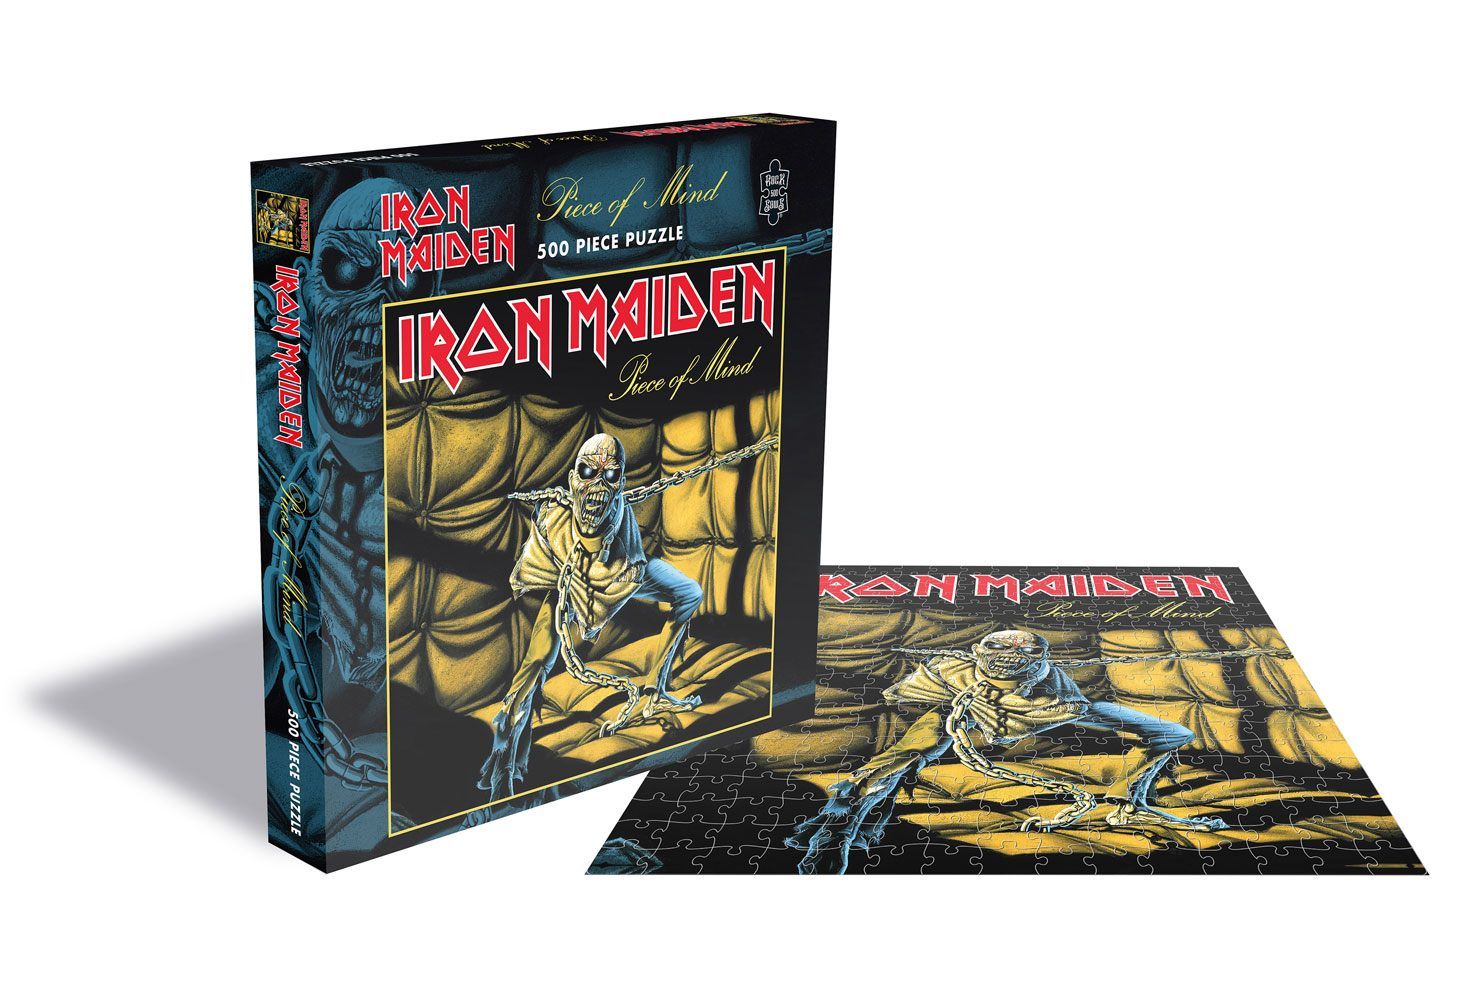 Iron Maiden Puzzle Piece of Mind PHD Merchandise